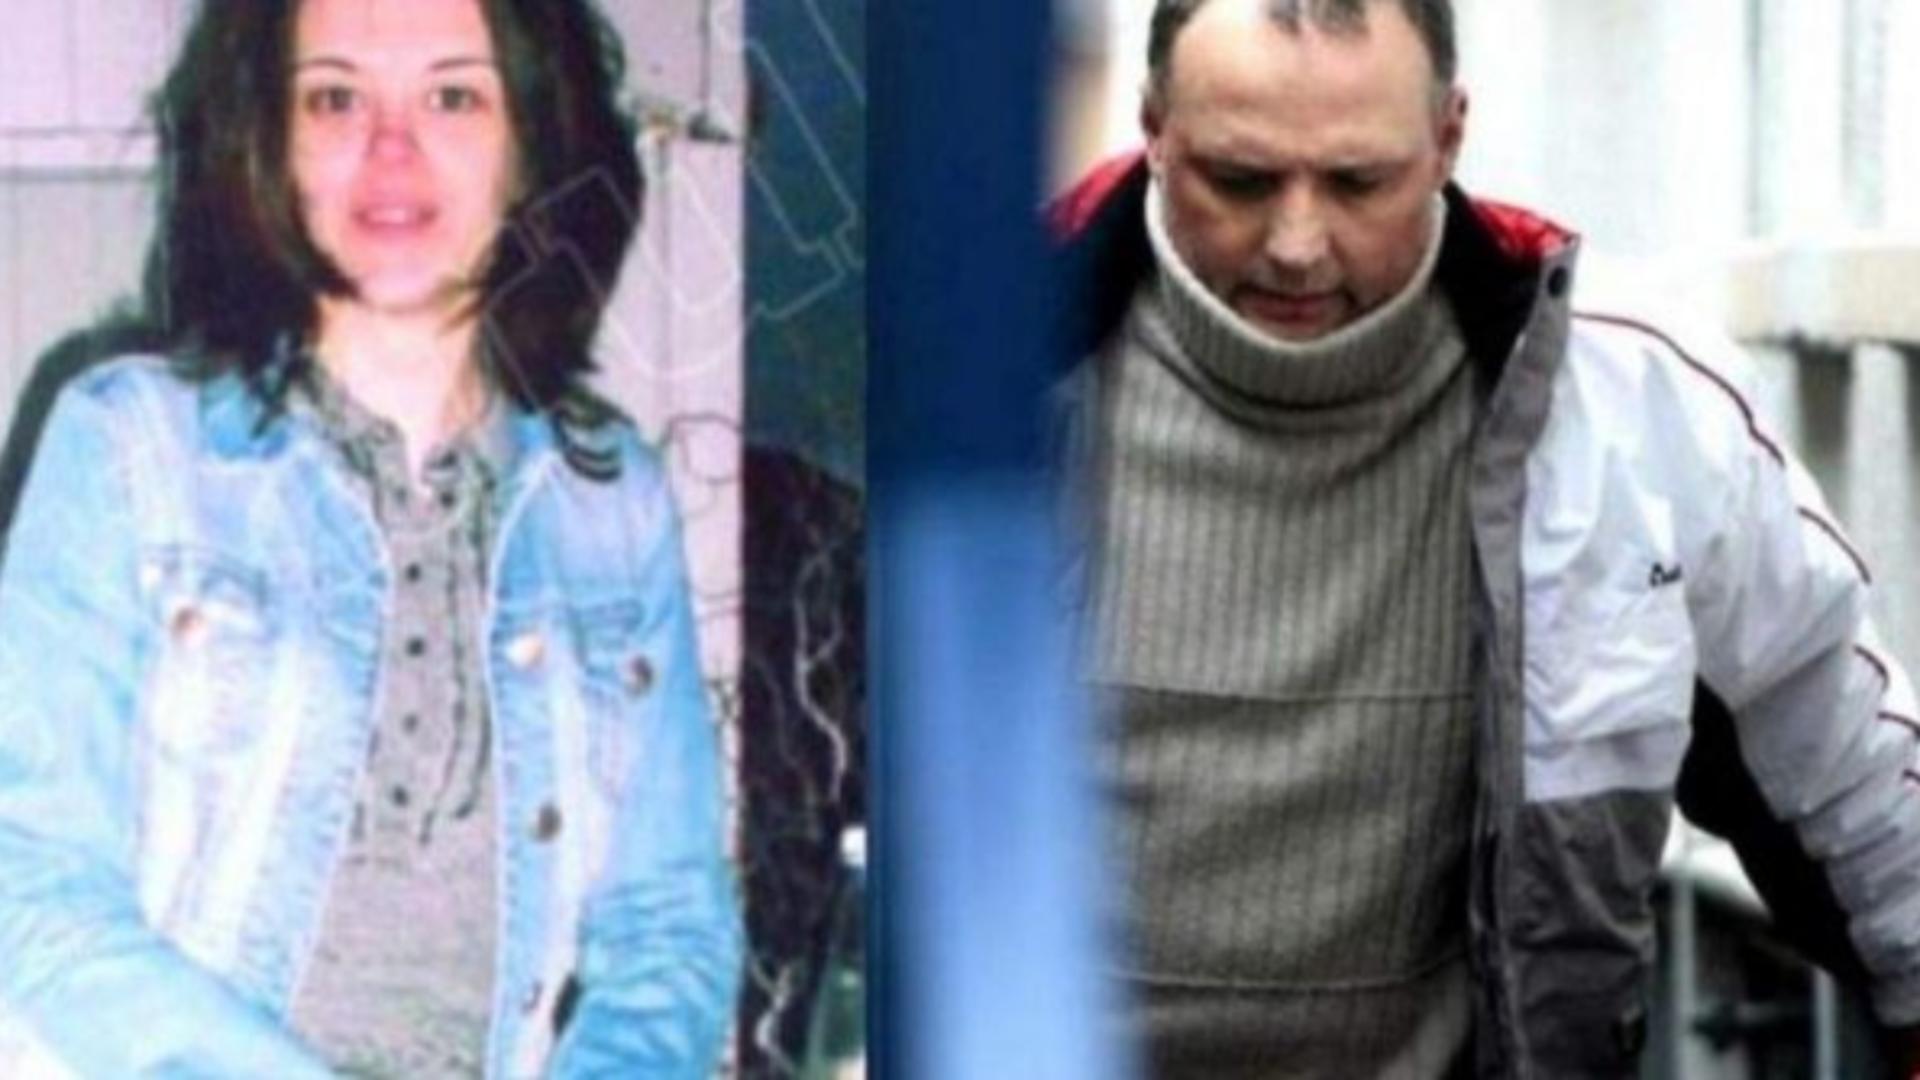 Un fost politician român condamnat pe viață în Irlanda vrea să fie liber - Și-a ucis amanta din gelozie. Detalii terifiante ale crimei din 2010